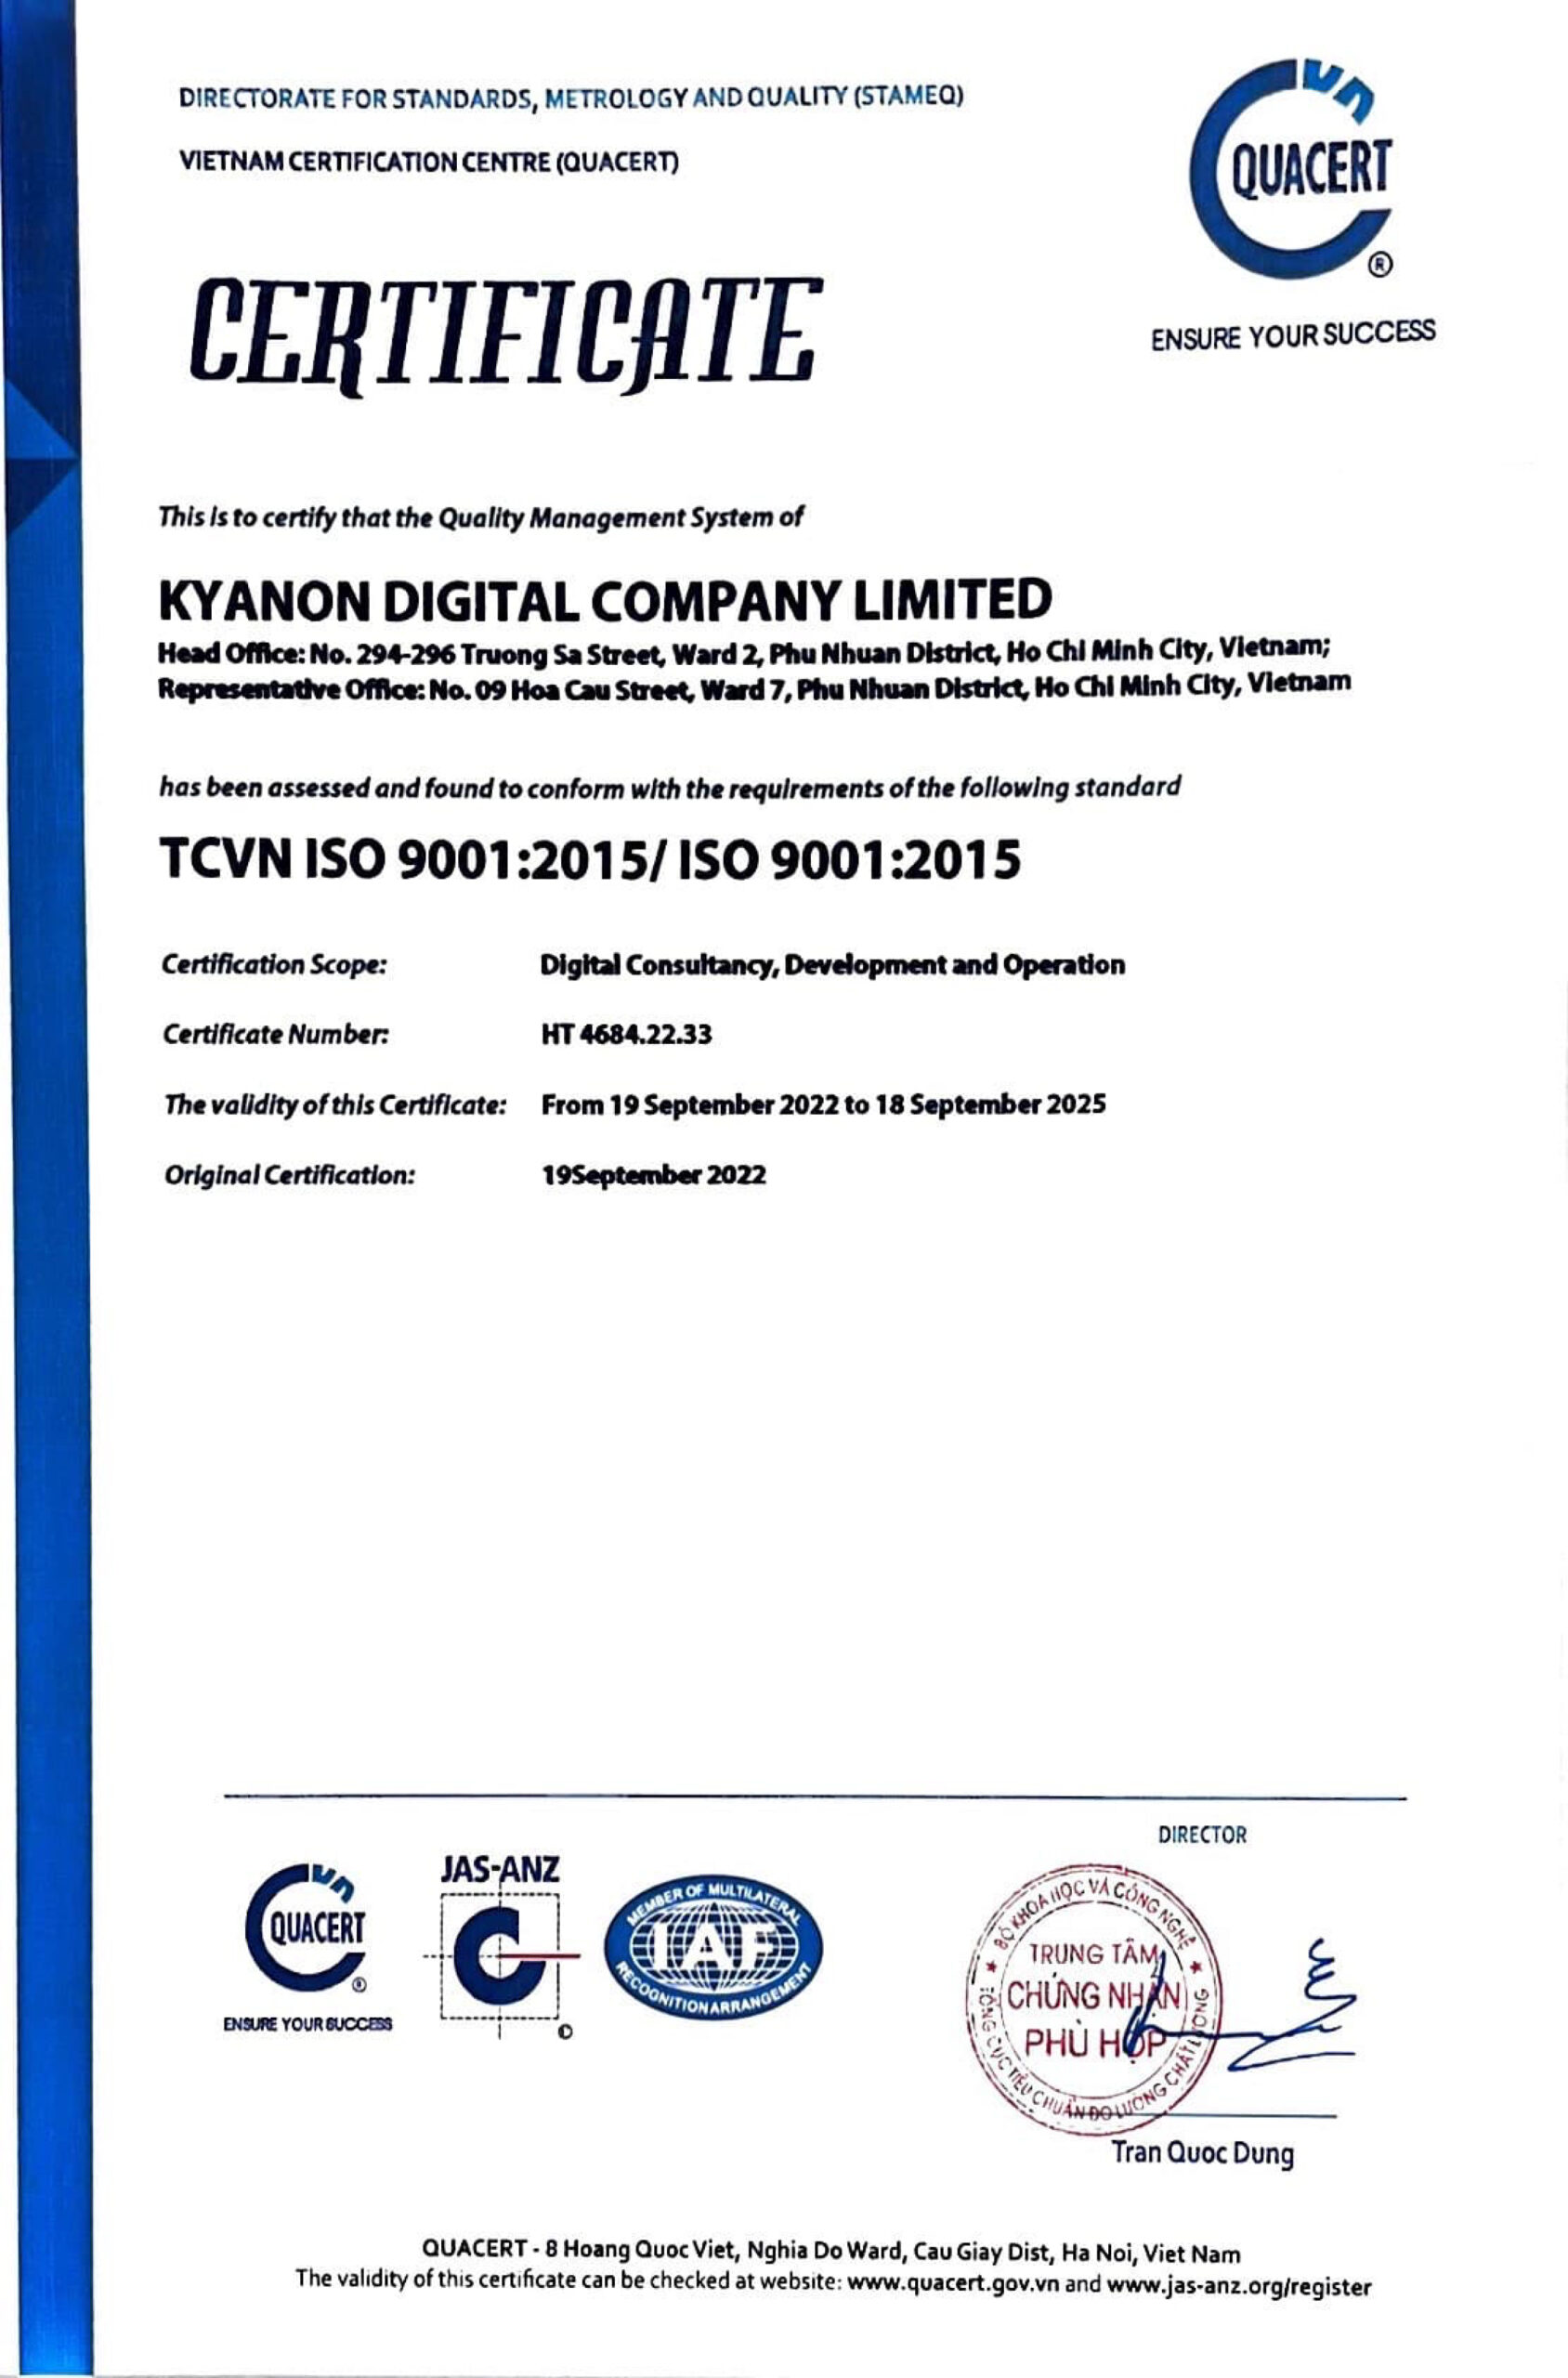 Kyanon Digital Đạt Chứng Chỉ ISO 9001: 2015 Từ Quacert